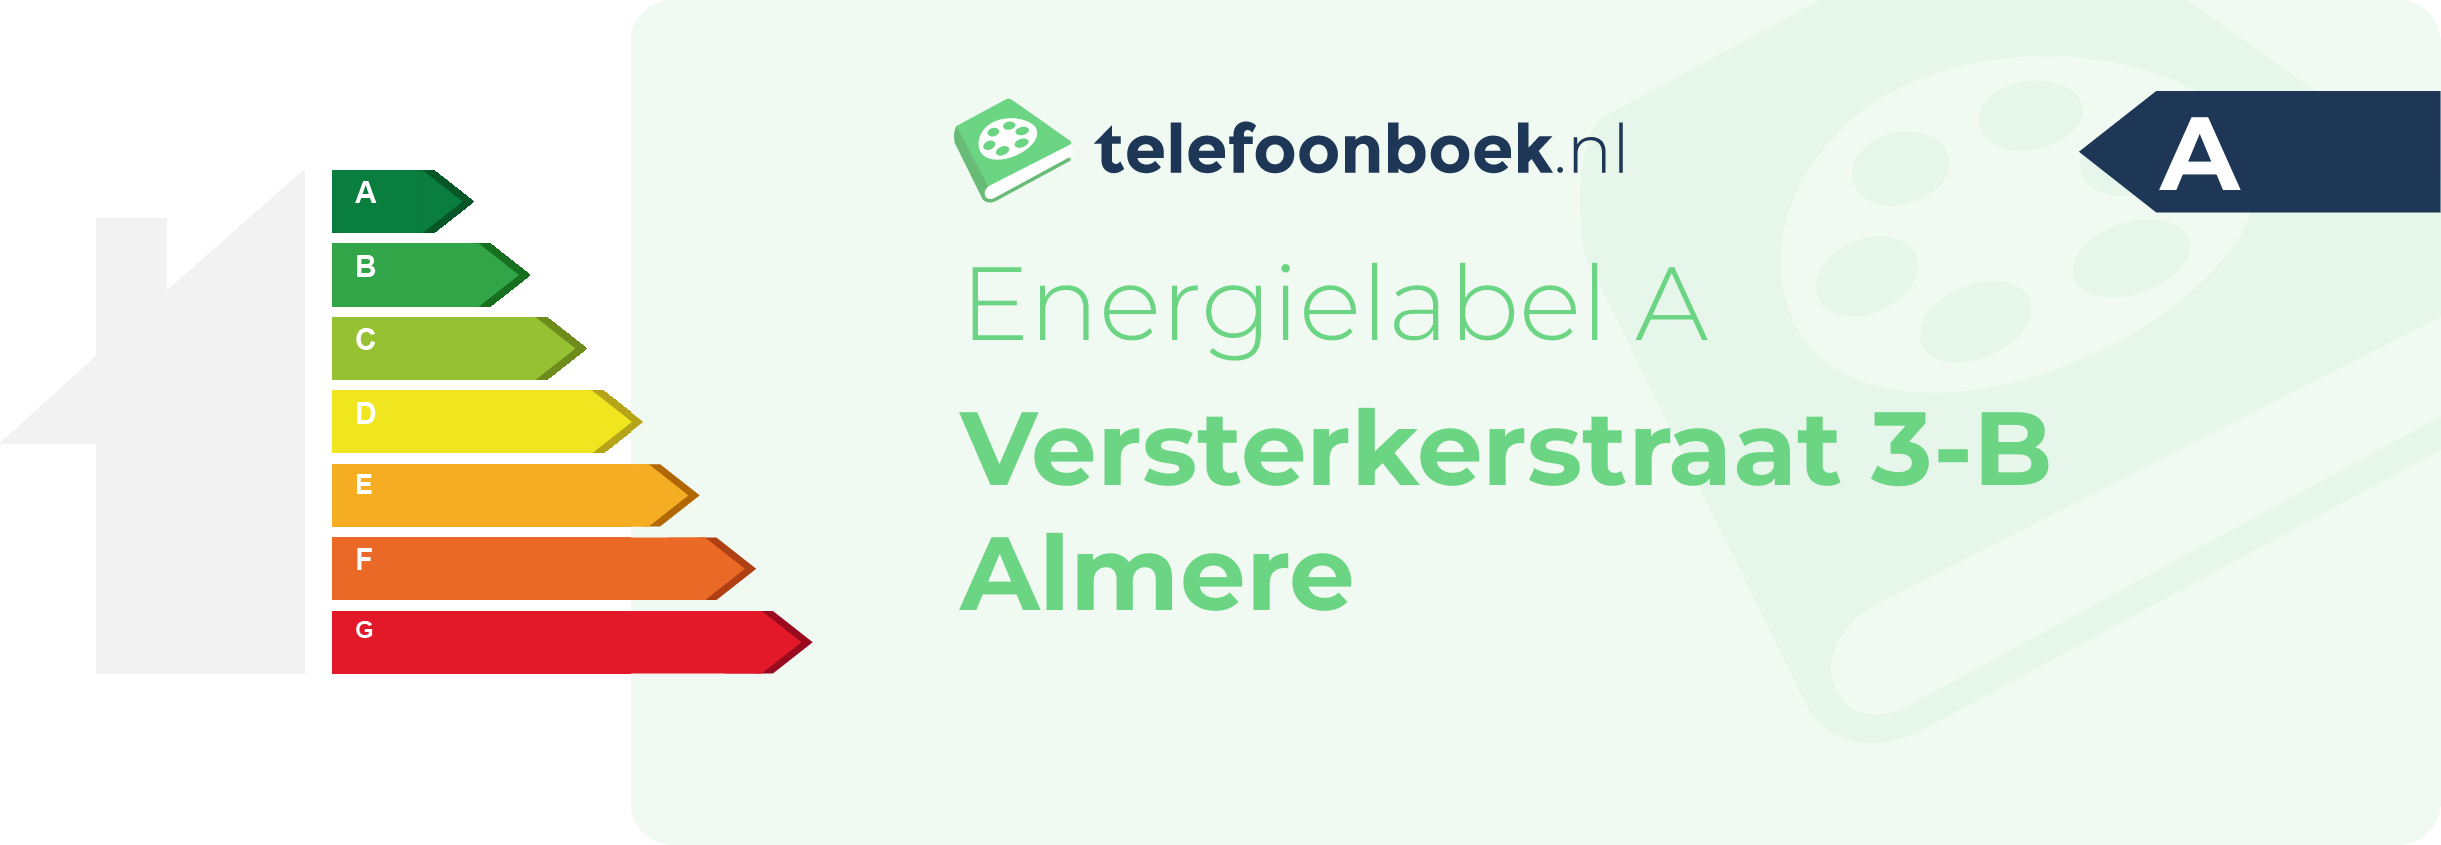 Energielabel Versterkerstraat 3-B Almere